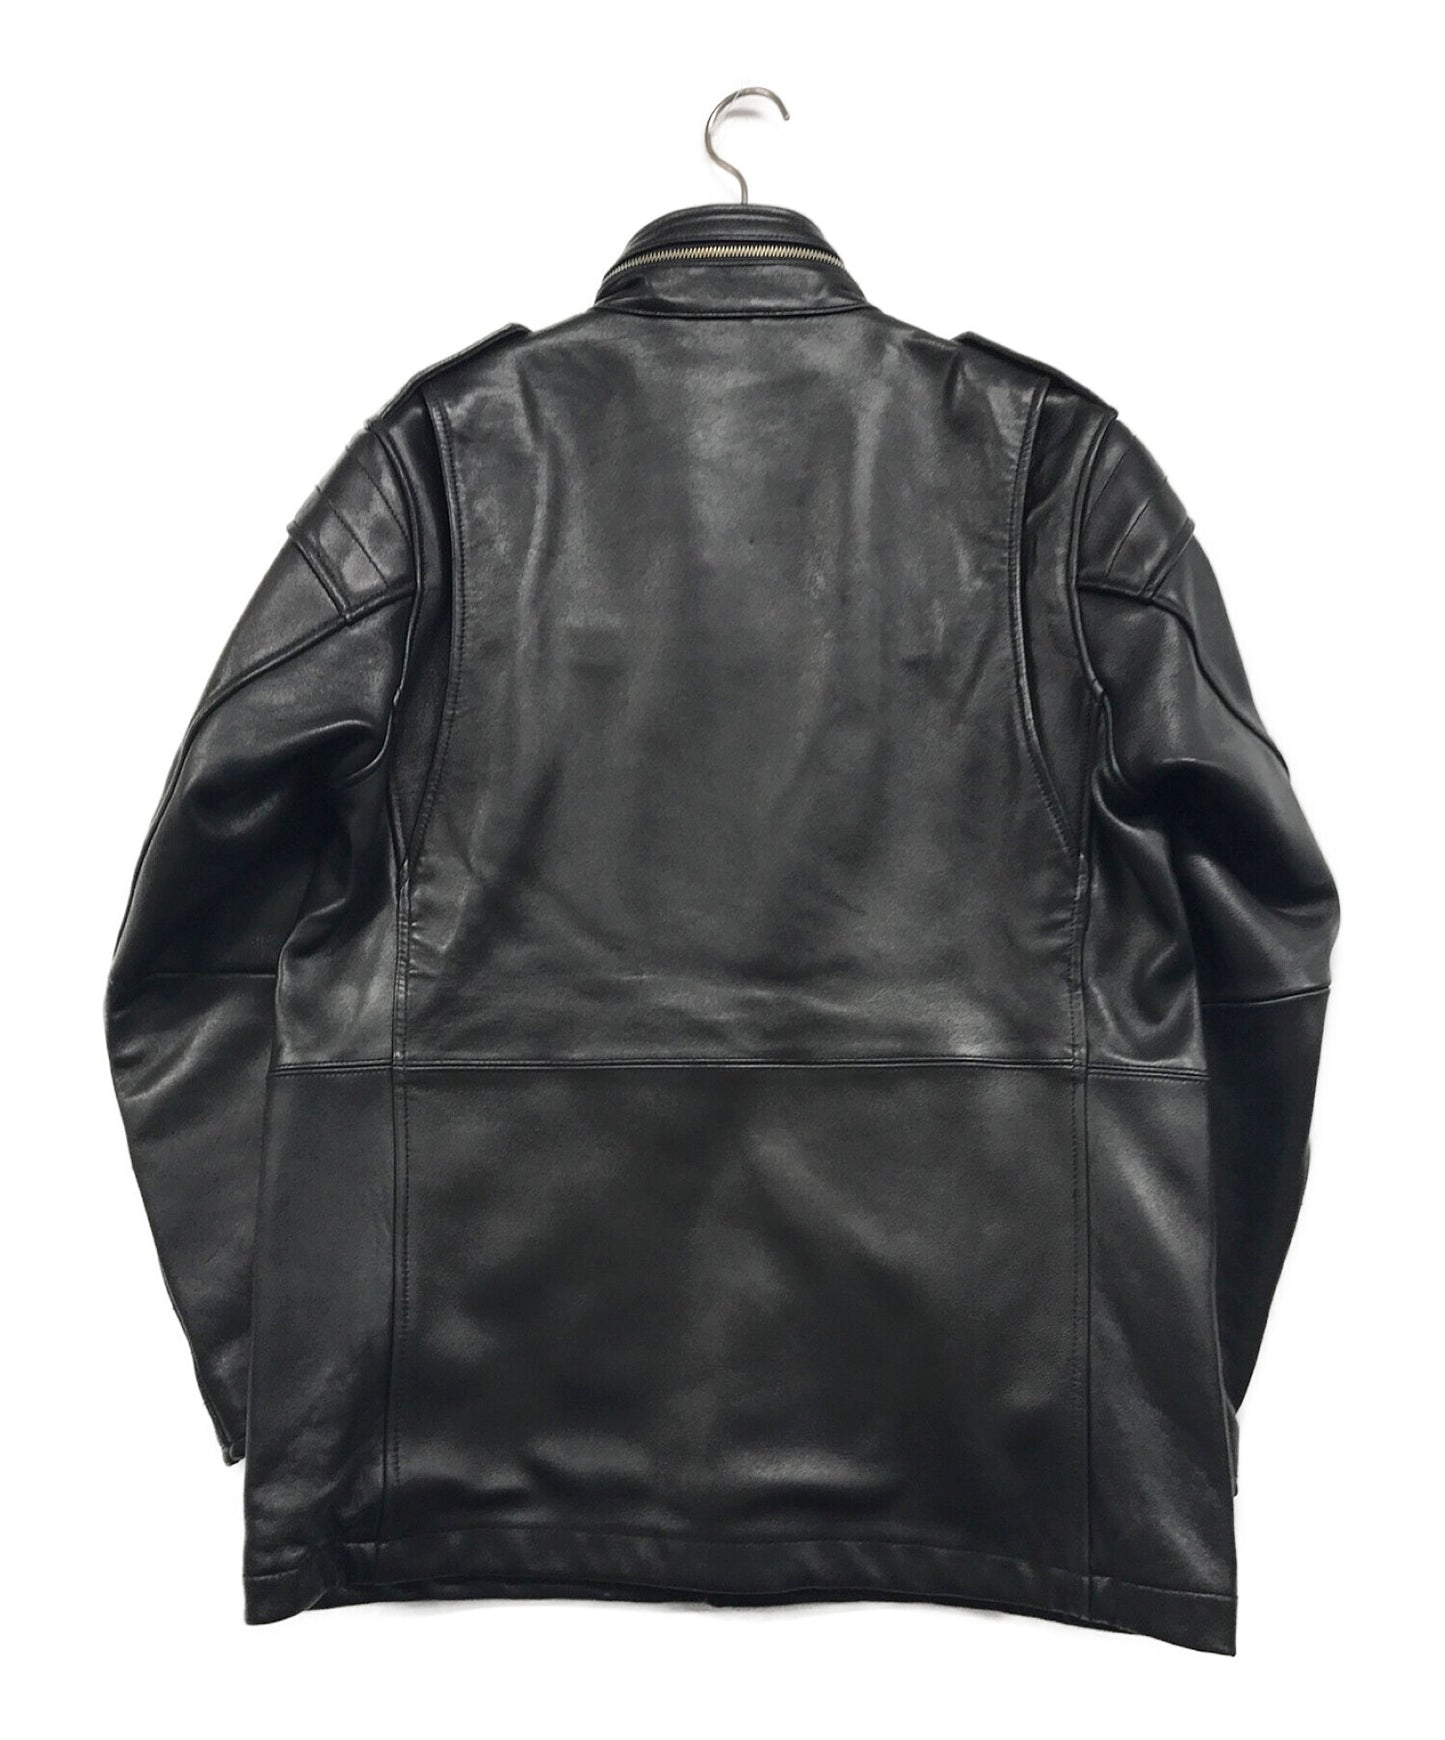 NEIGHBORHOOD M-65 Sheep Leather Jacket